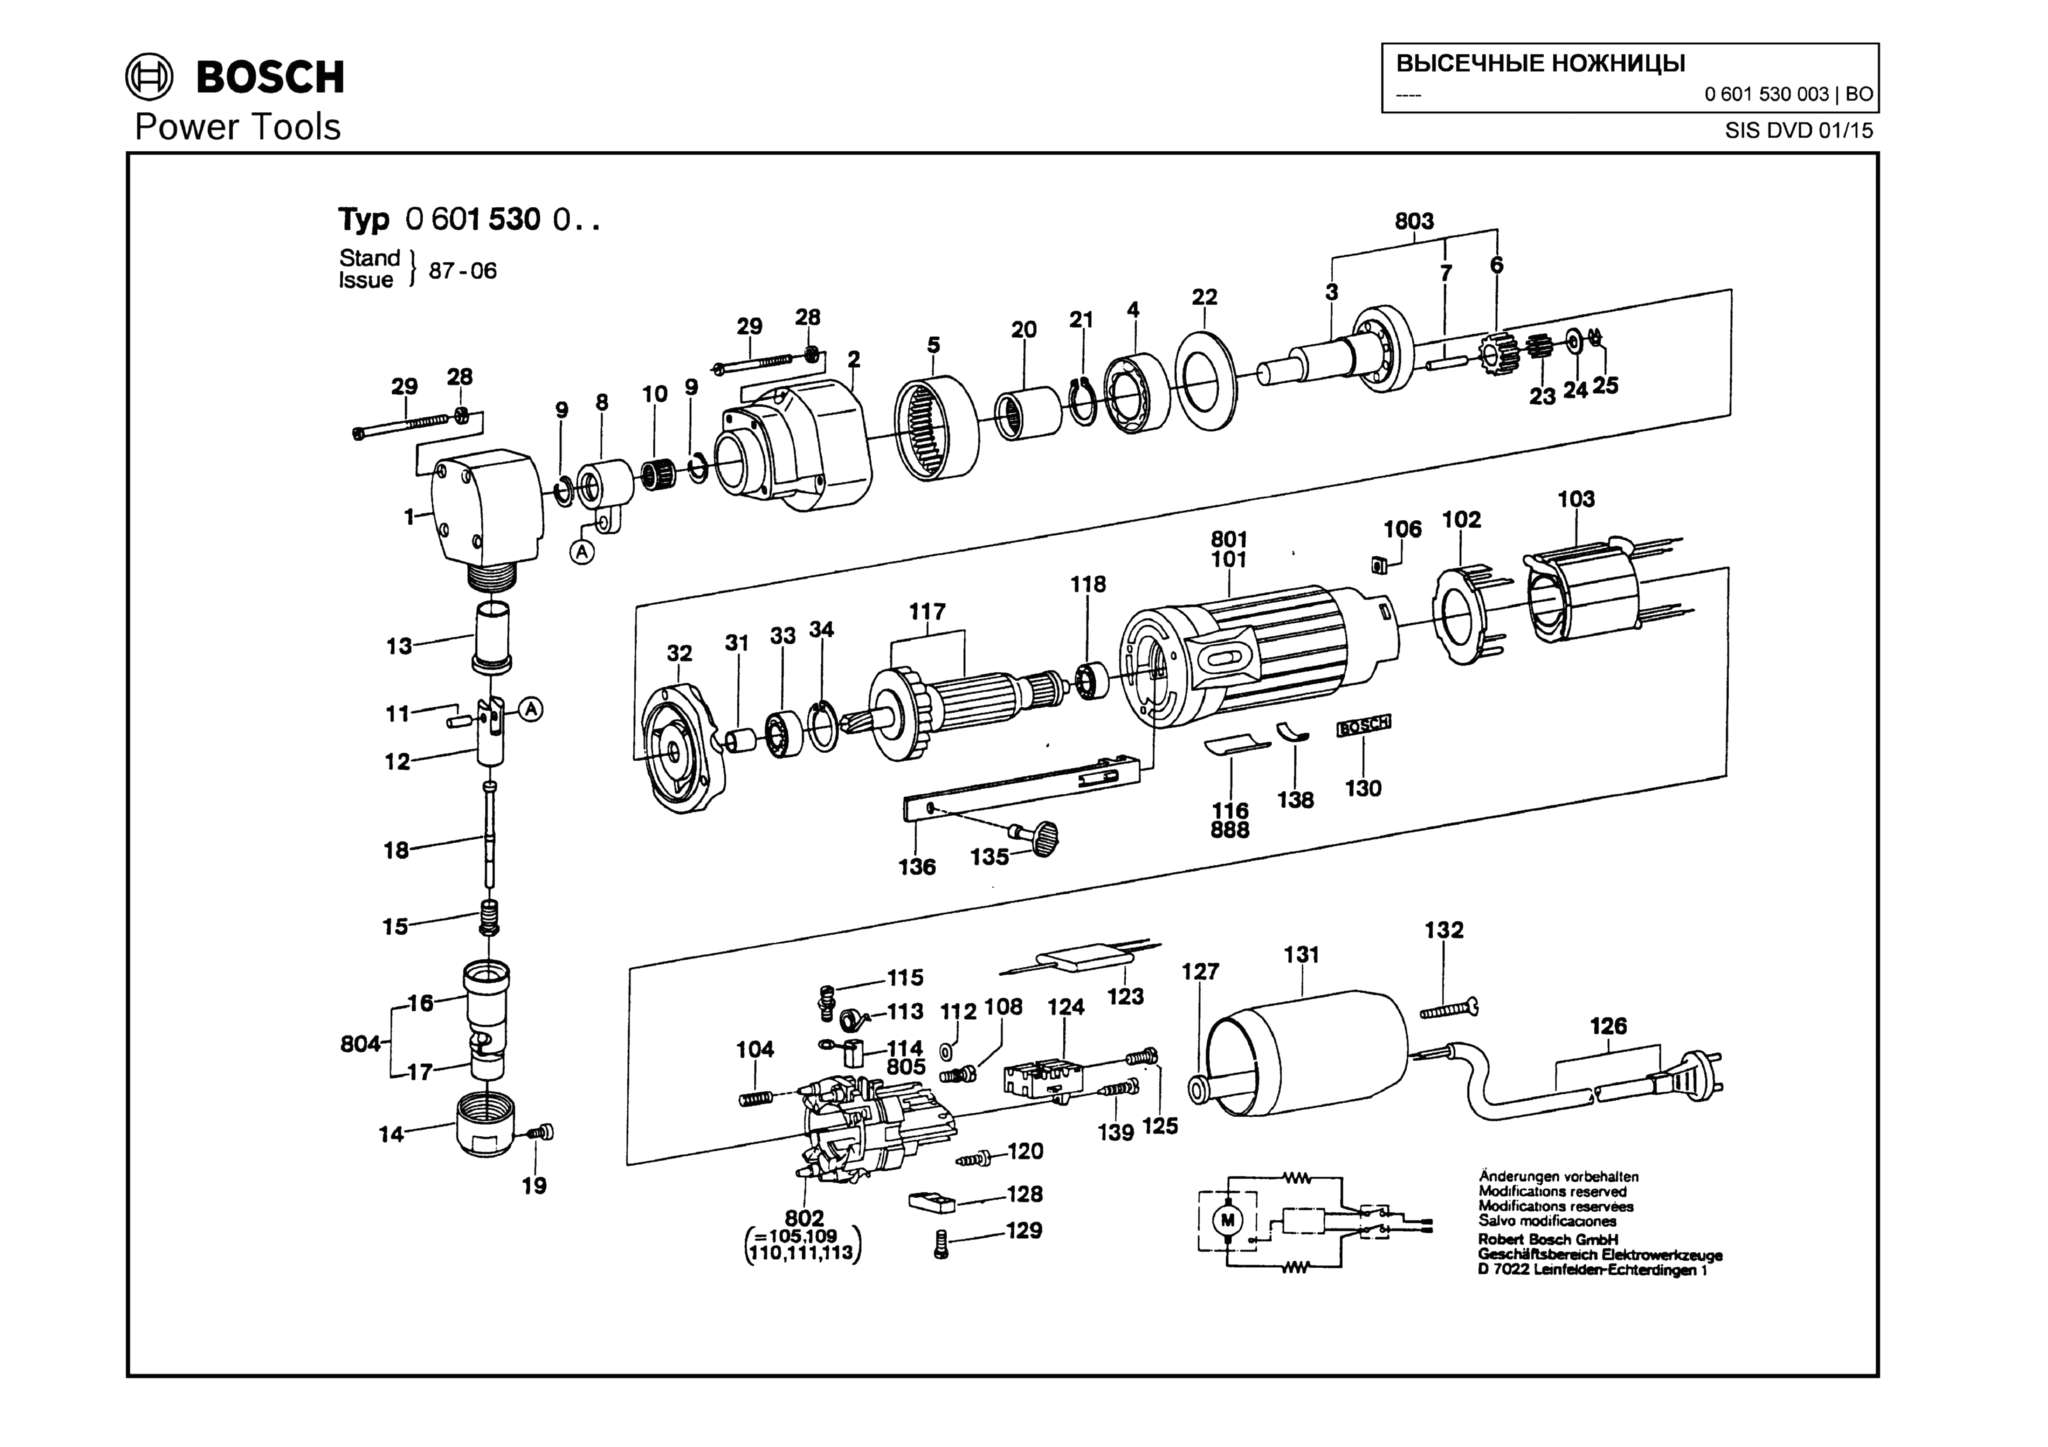 Запчасти, схема и деталировка Bosch (ТИП 0601530003)